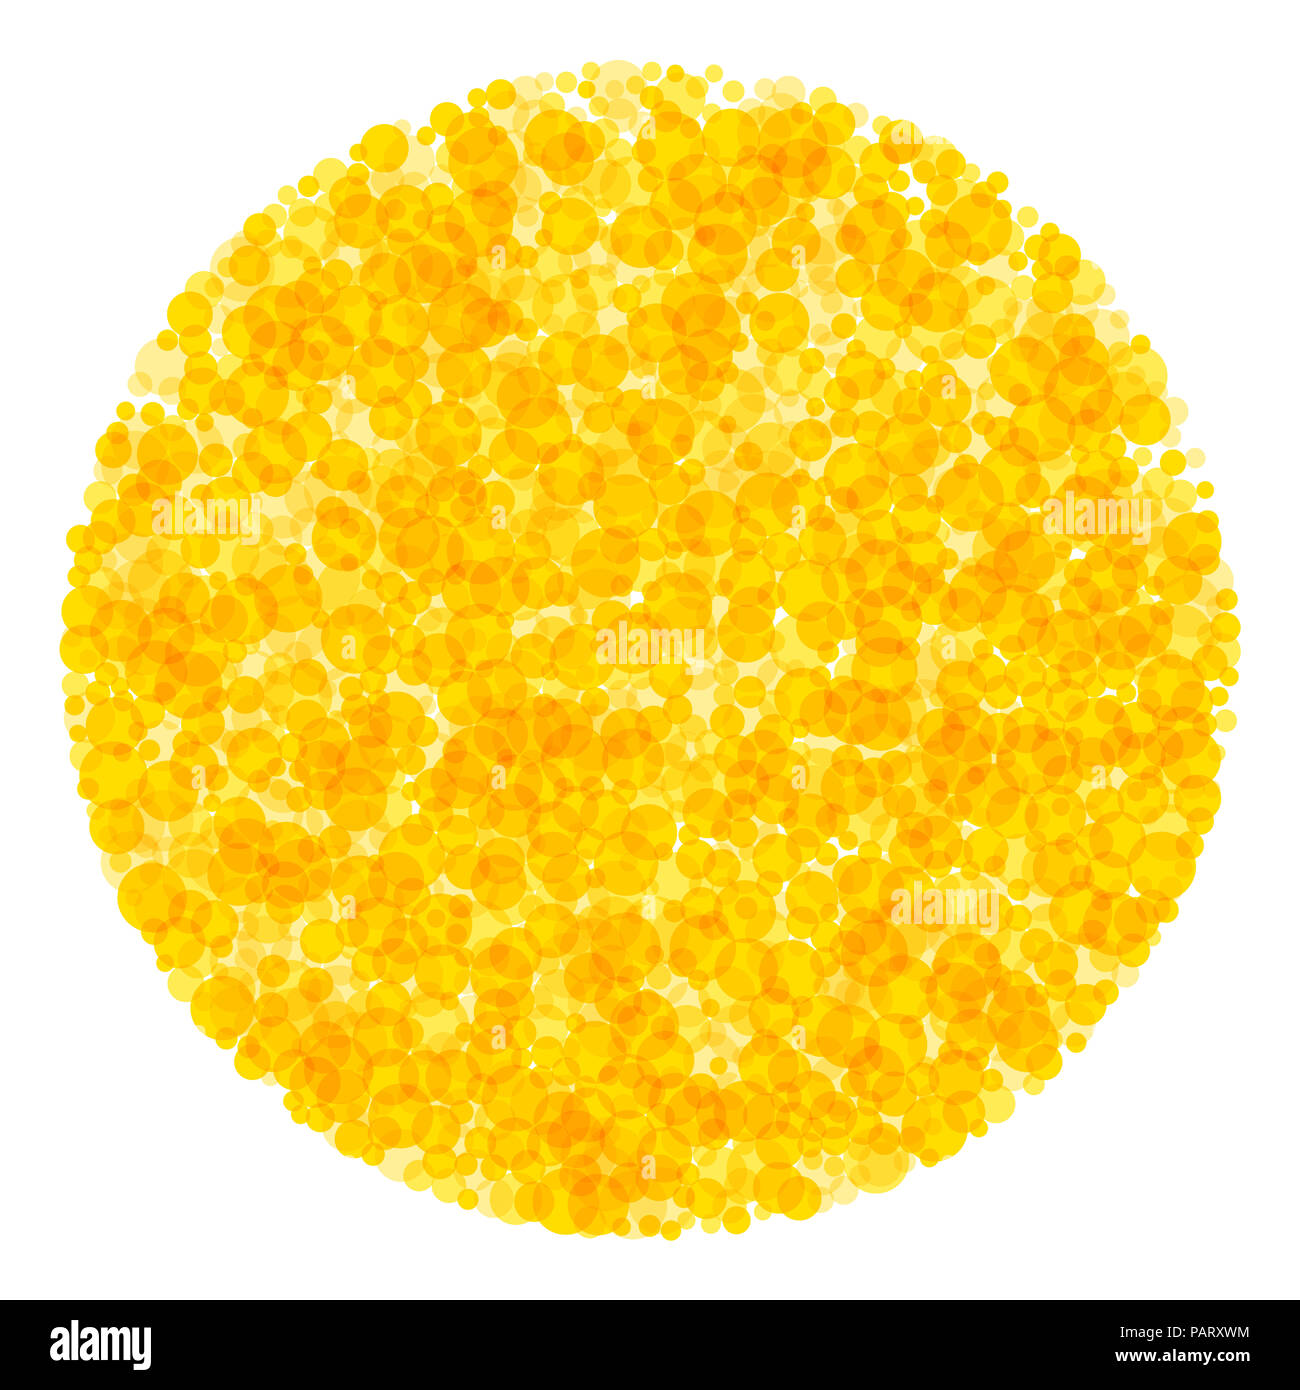 Cerchio di puntini. Molti giallo e arancio spot traslucido formando una luminosa zona conformata a cerchio, come un sole. Sunny decor. Illustrazione. Foto Stock